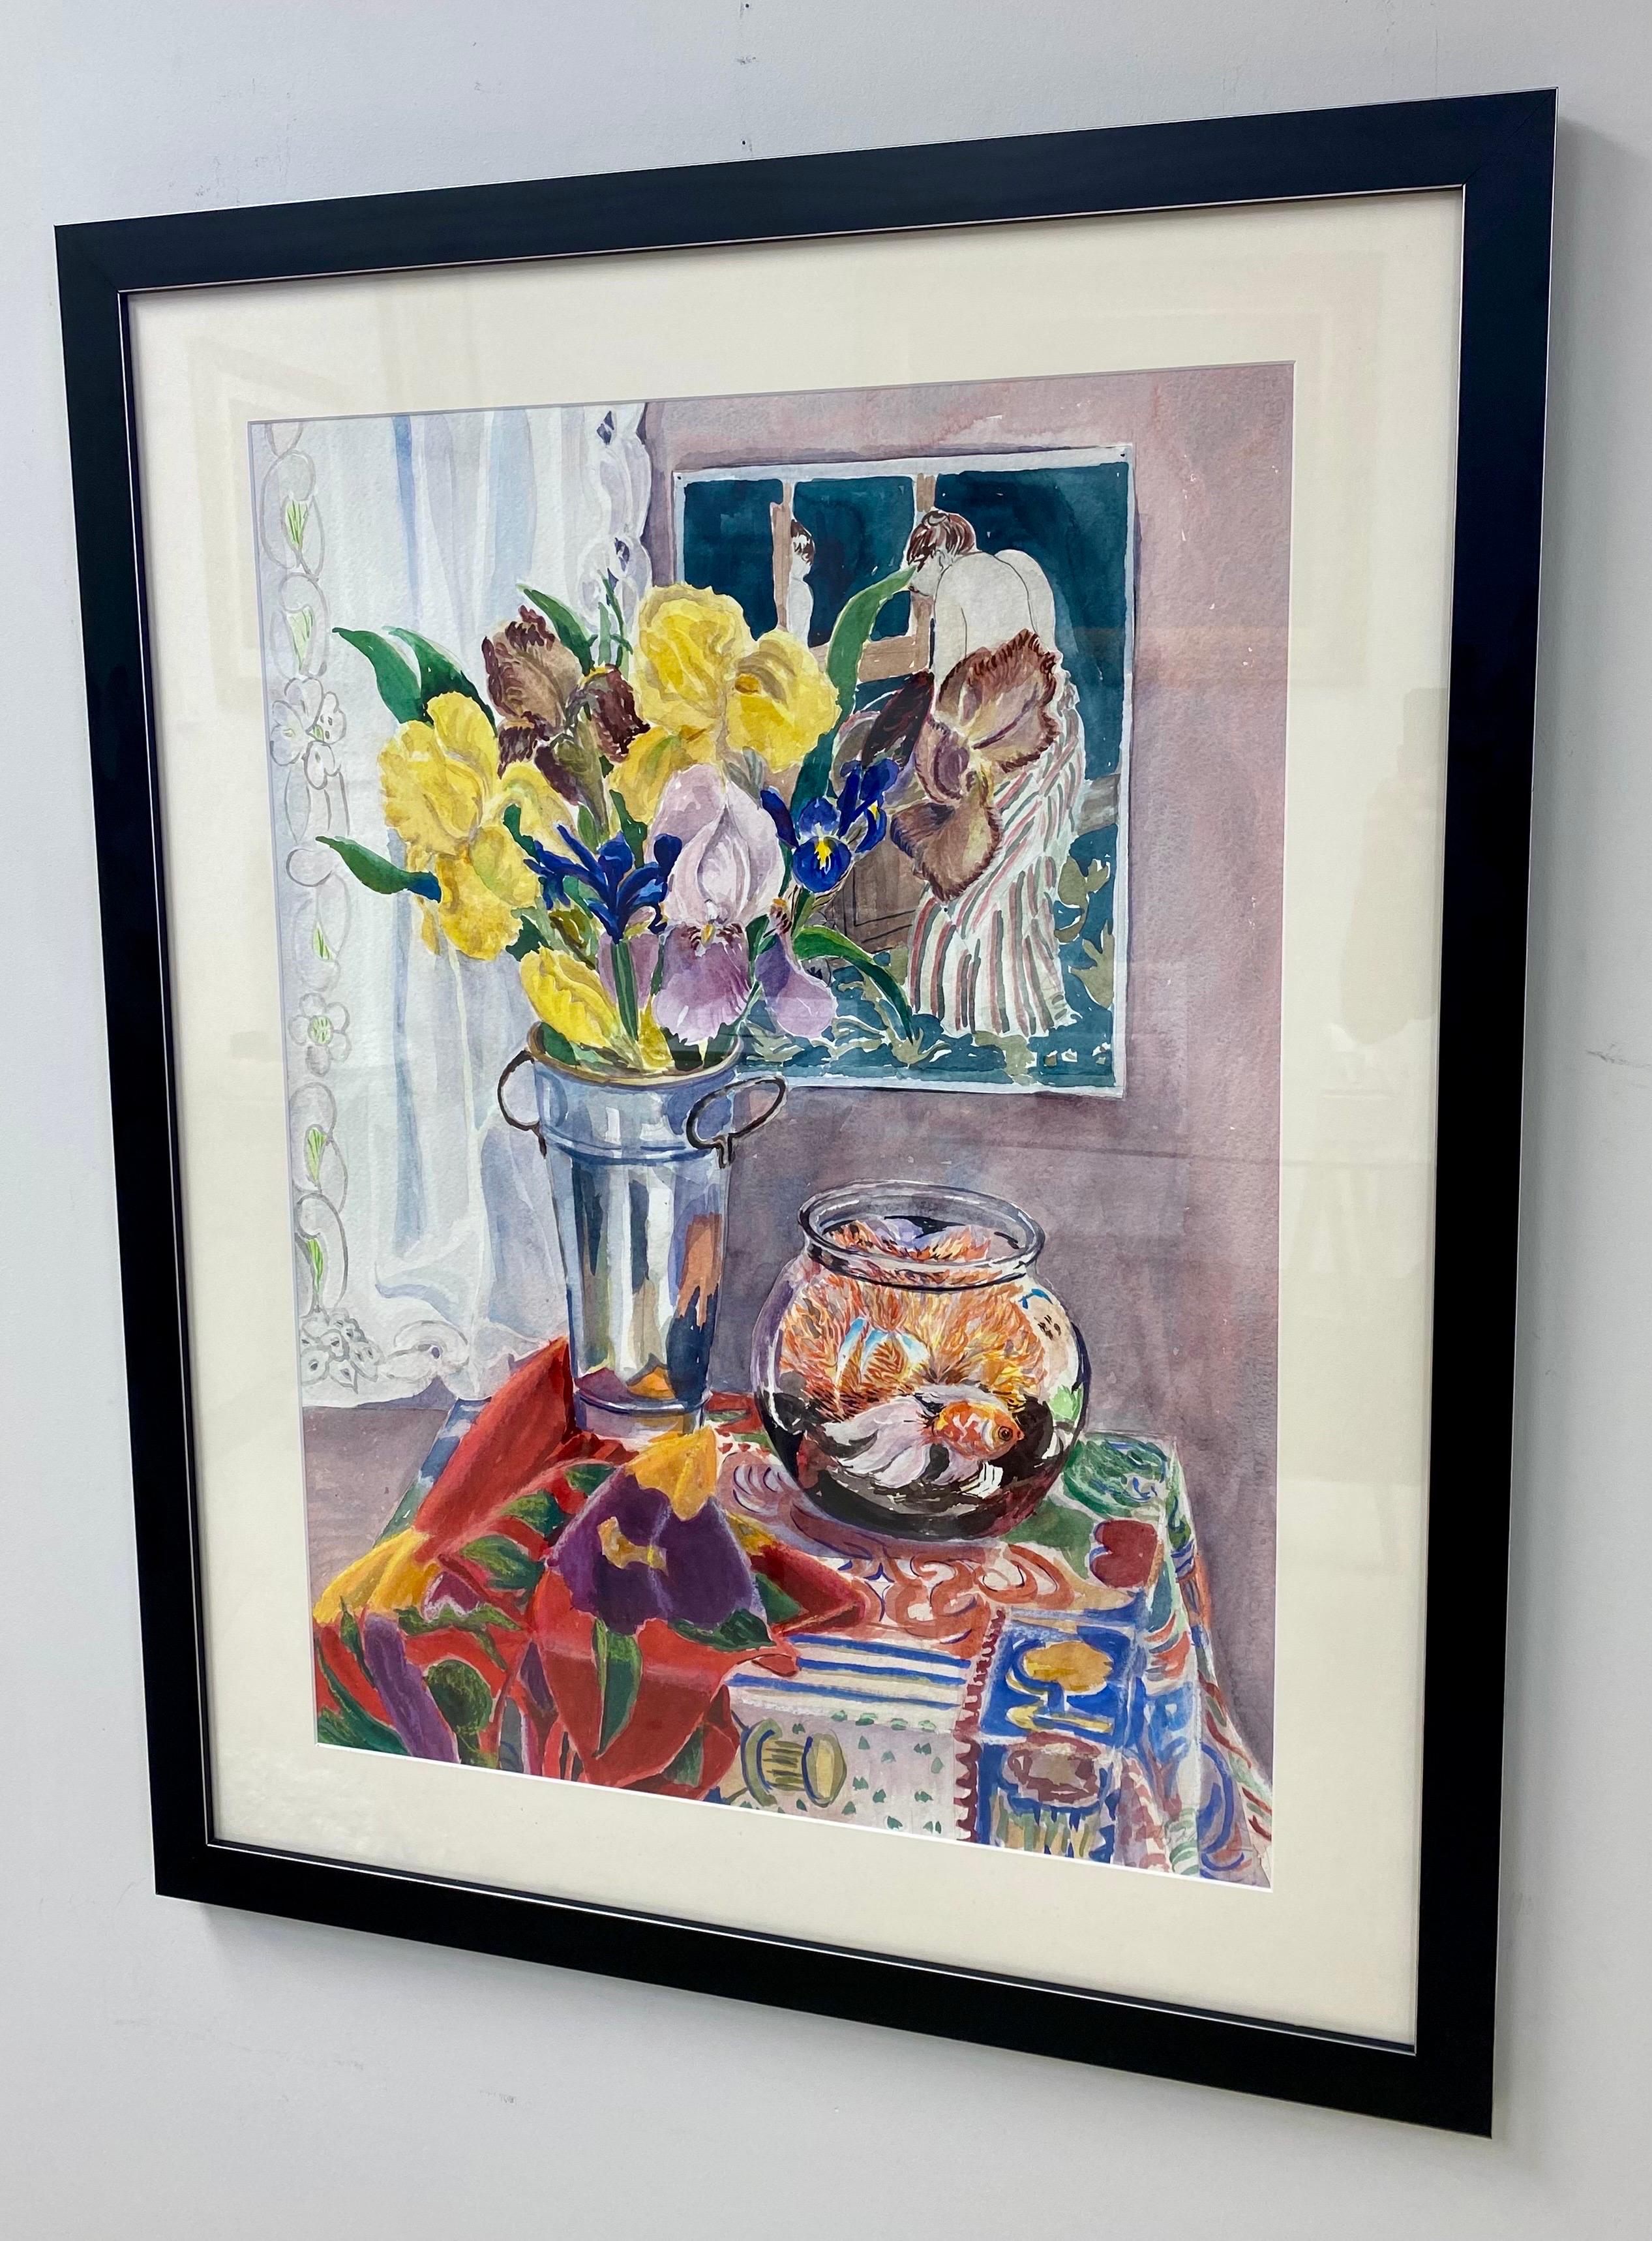 Nature morte aquarelle d'iris, de Mary Cassatt et de poissons rouges par Cathy Folk-Williams - Réalisme américain Painting par Cathy Folk-Williams 